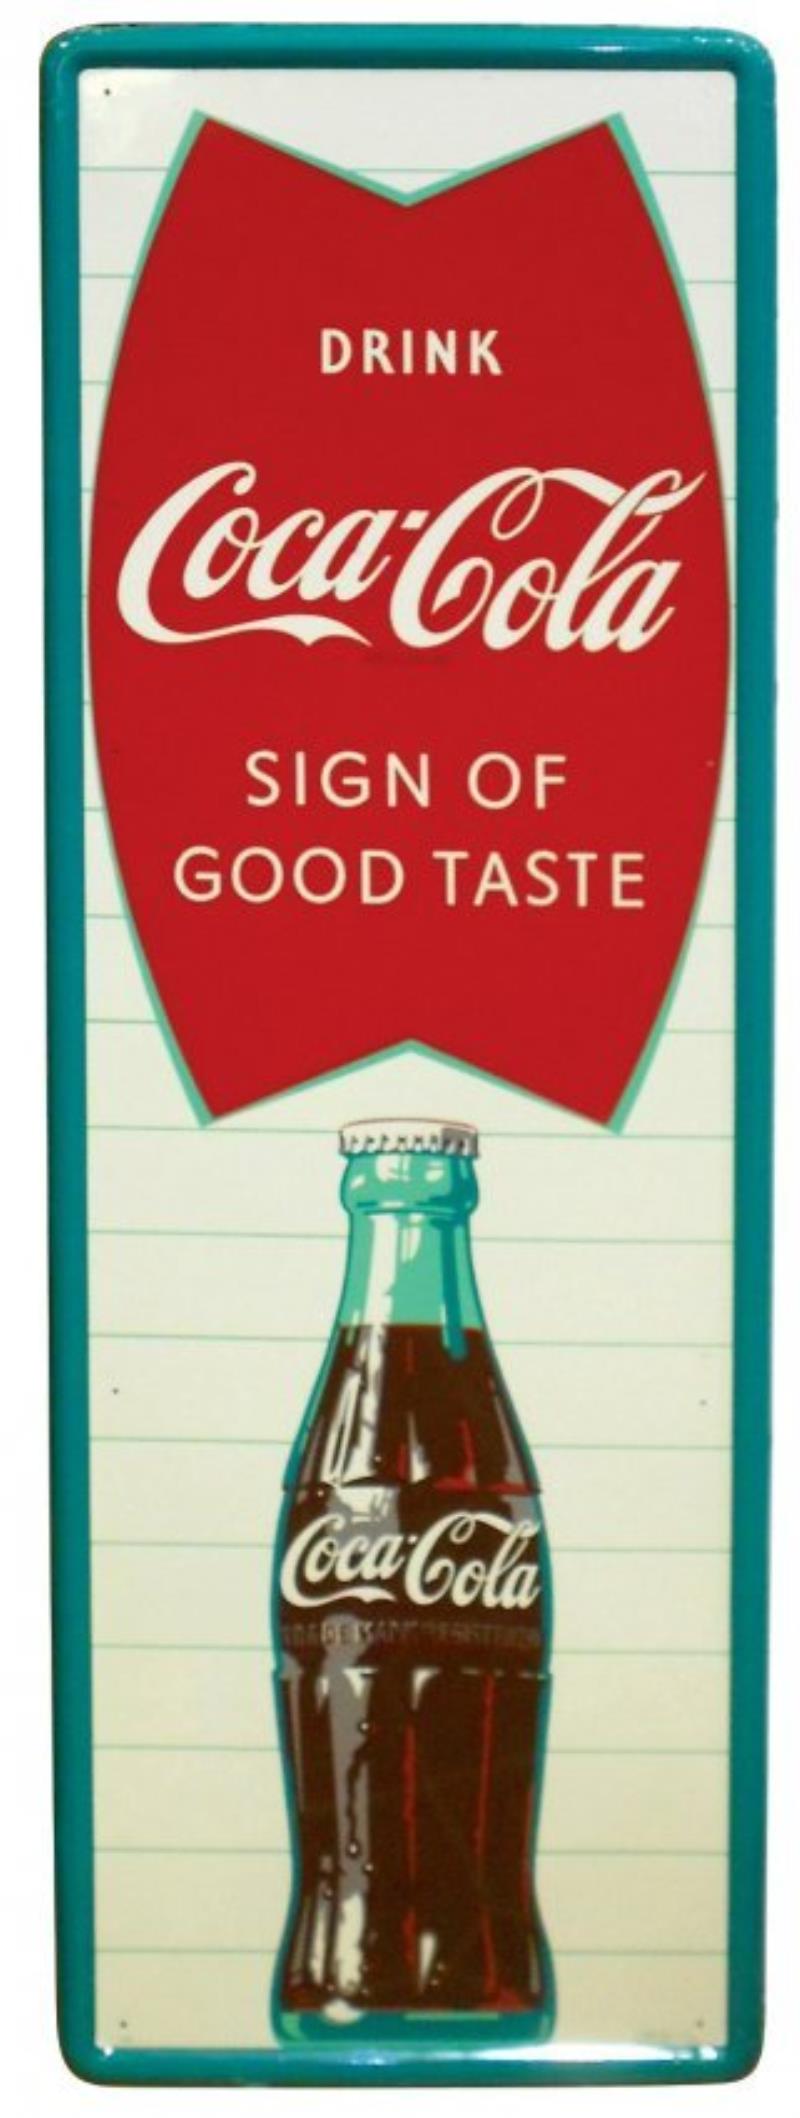 Coca-Cola sign, "Drink Coca-Cola Sign of Good Taste",